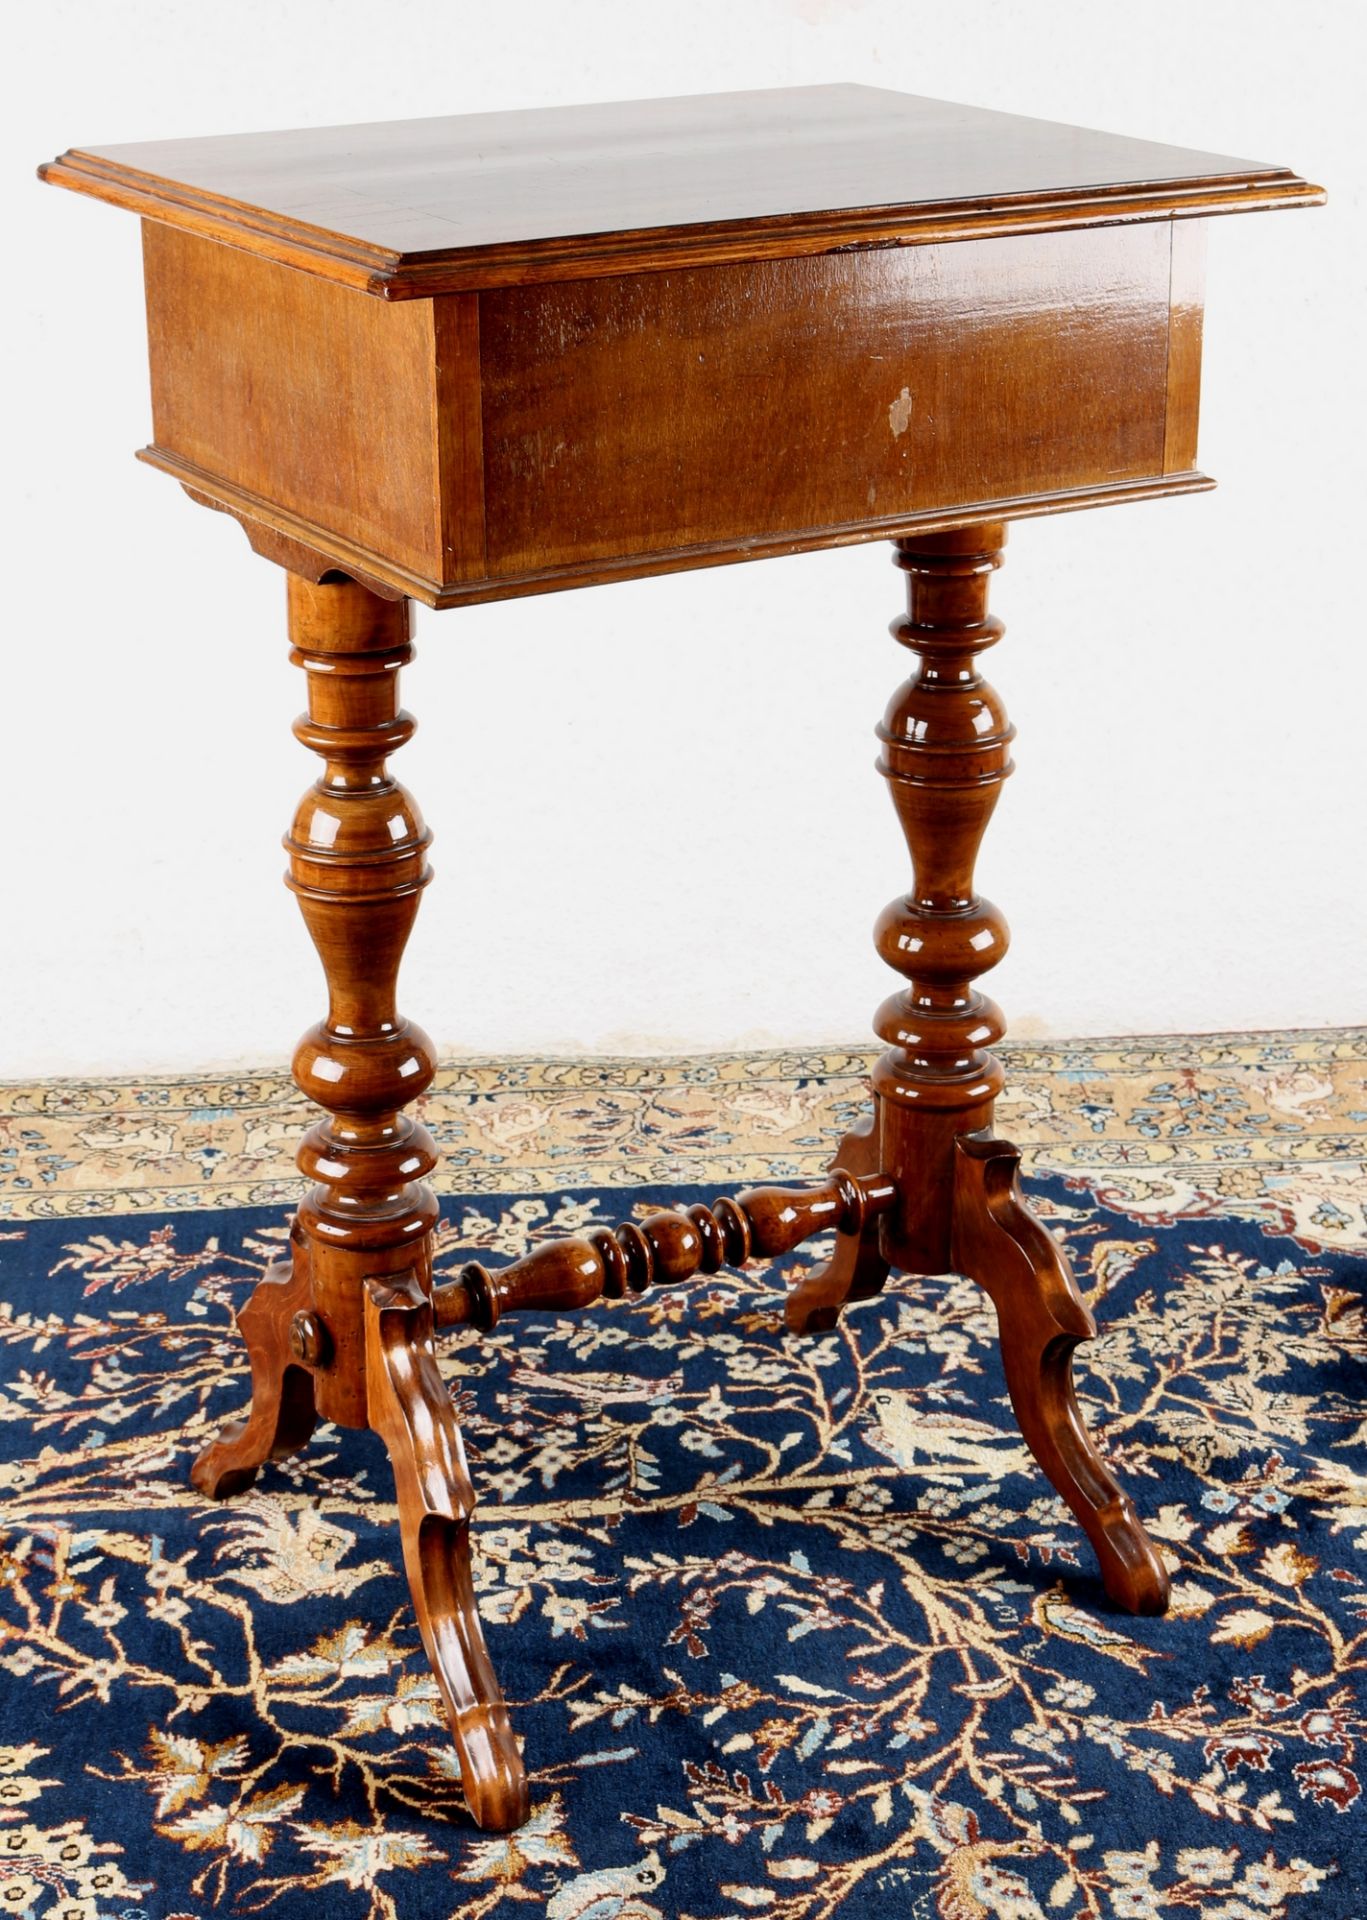 Nähtisch um 1900 Nussbaum, sewing table around 1900 walnut - Bild 7 aus 7